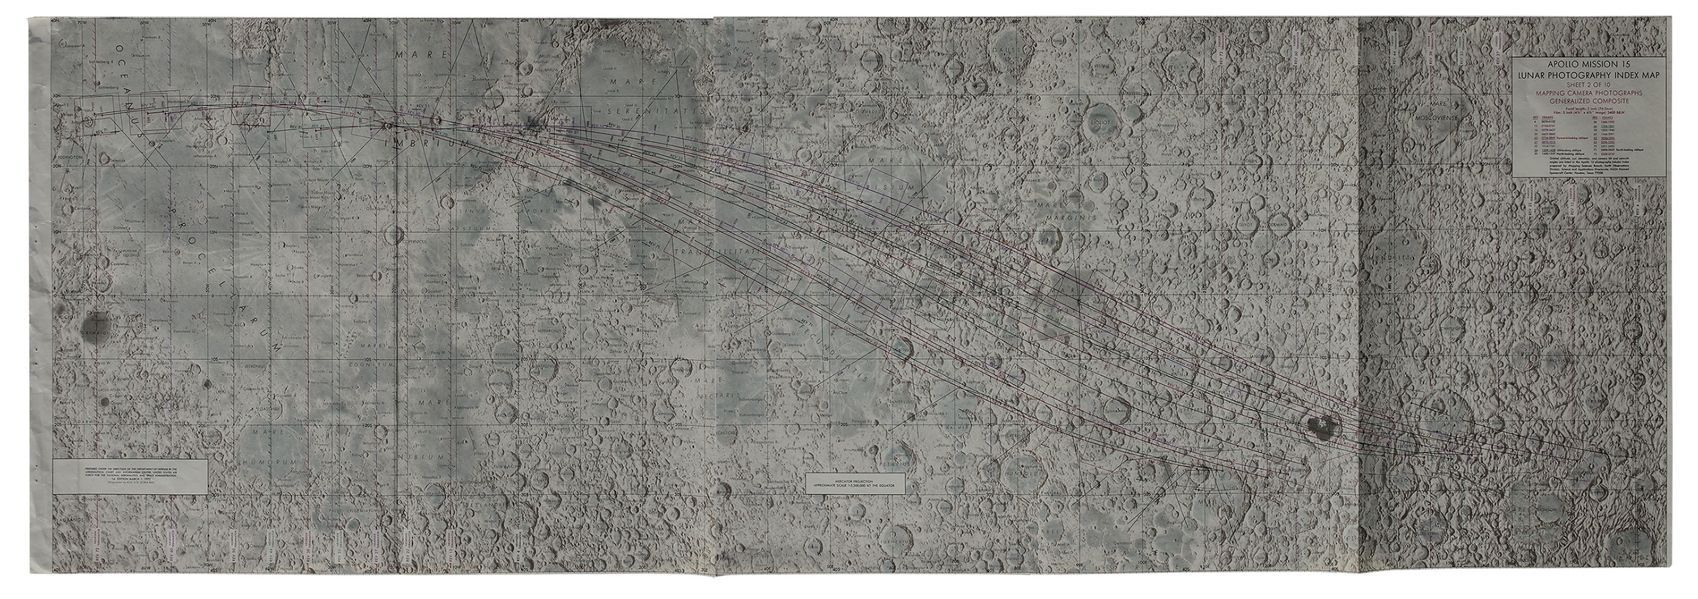 Apollo 15 Lunar Map